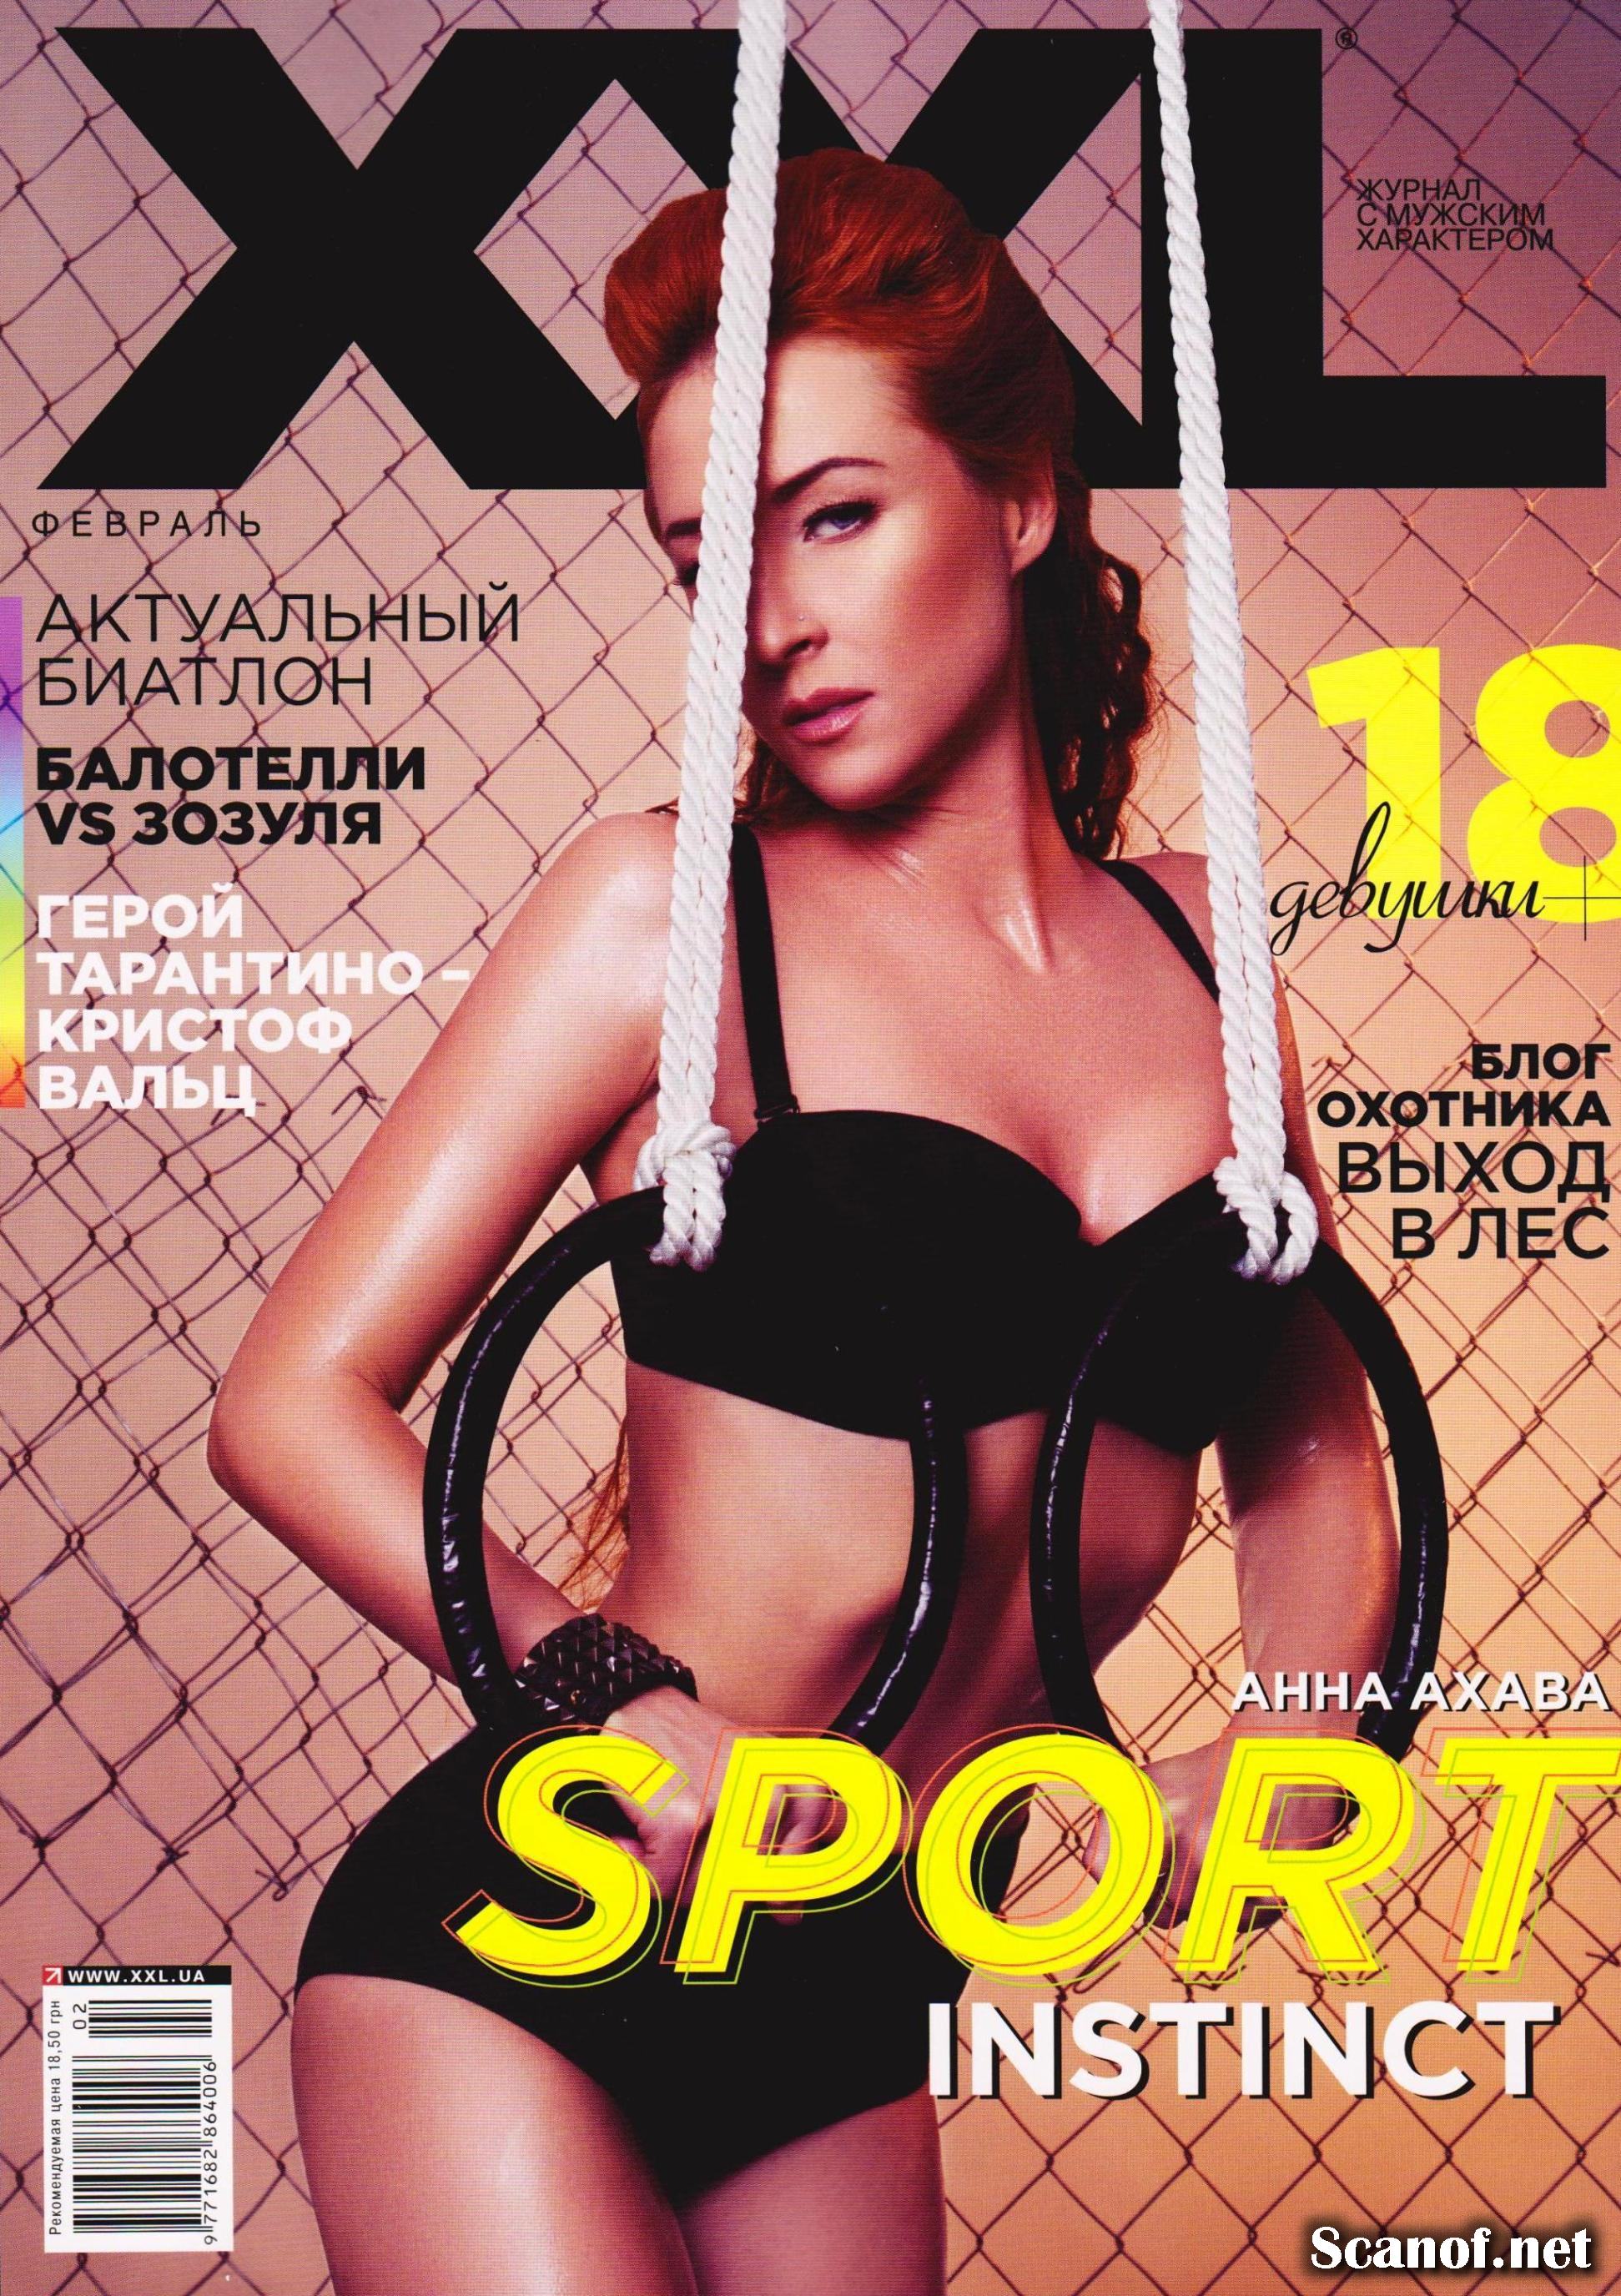 Anna Ahava for XXL Magazine Ukraine